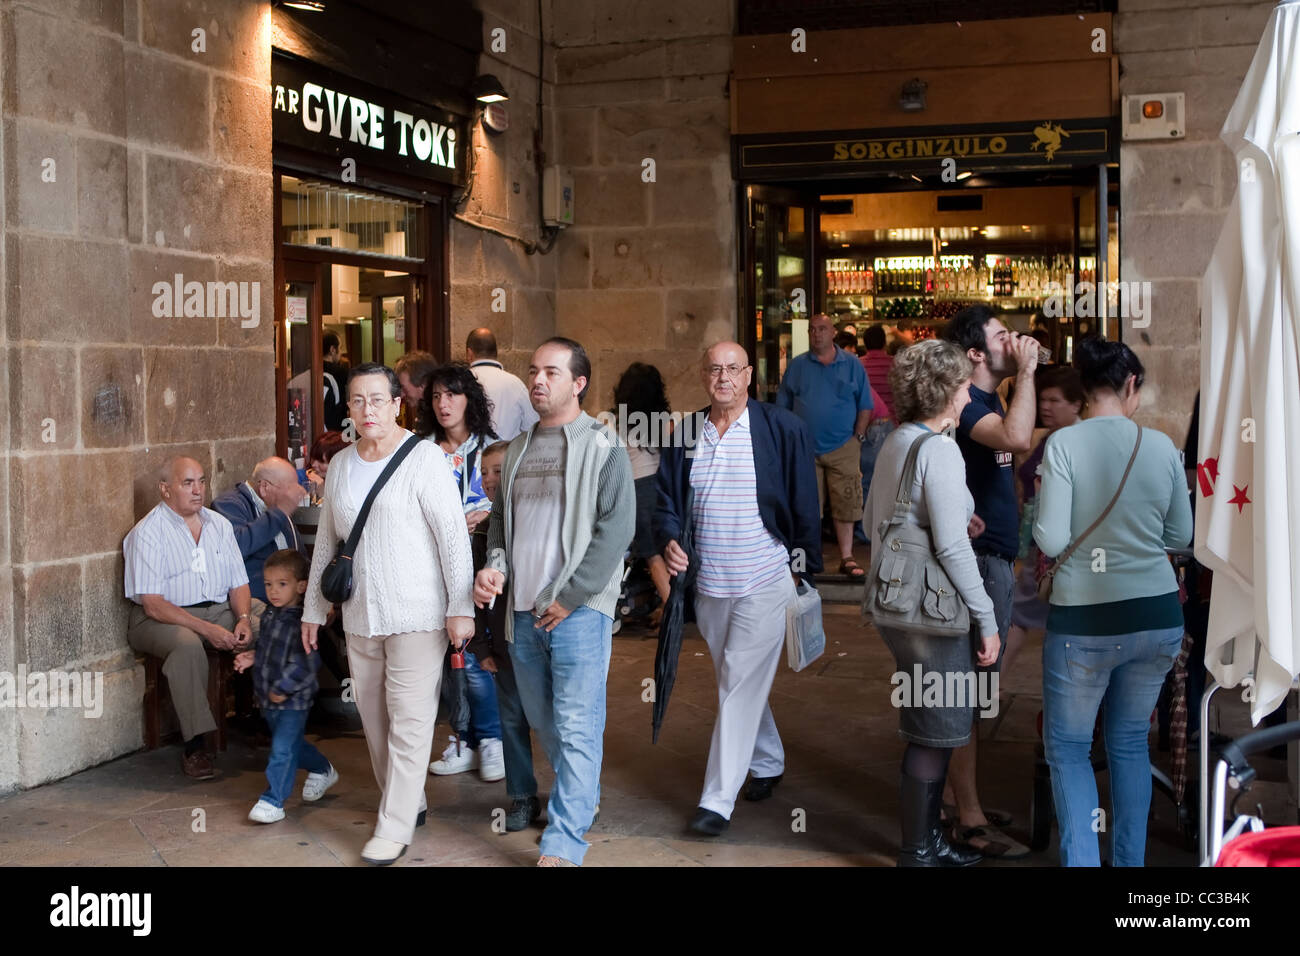 Bars, Sunday Market, Plaza Nuevo, Casco Viejo, Bilbao, Spain Stock Photo -  Alamy